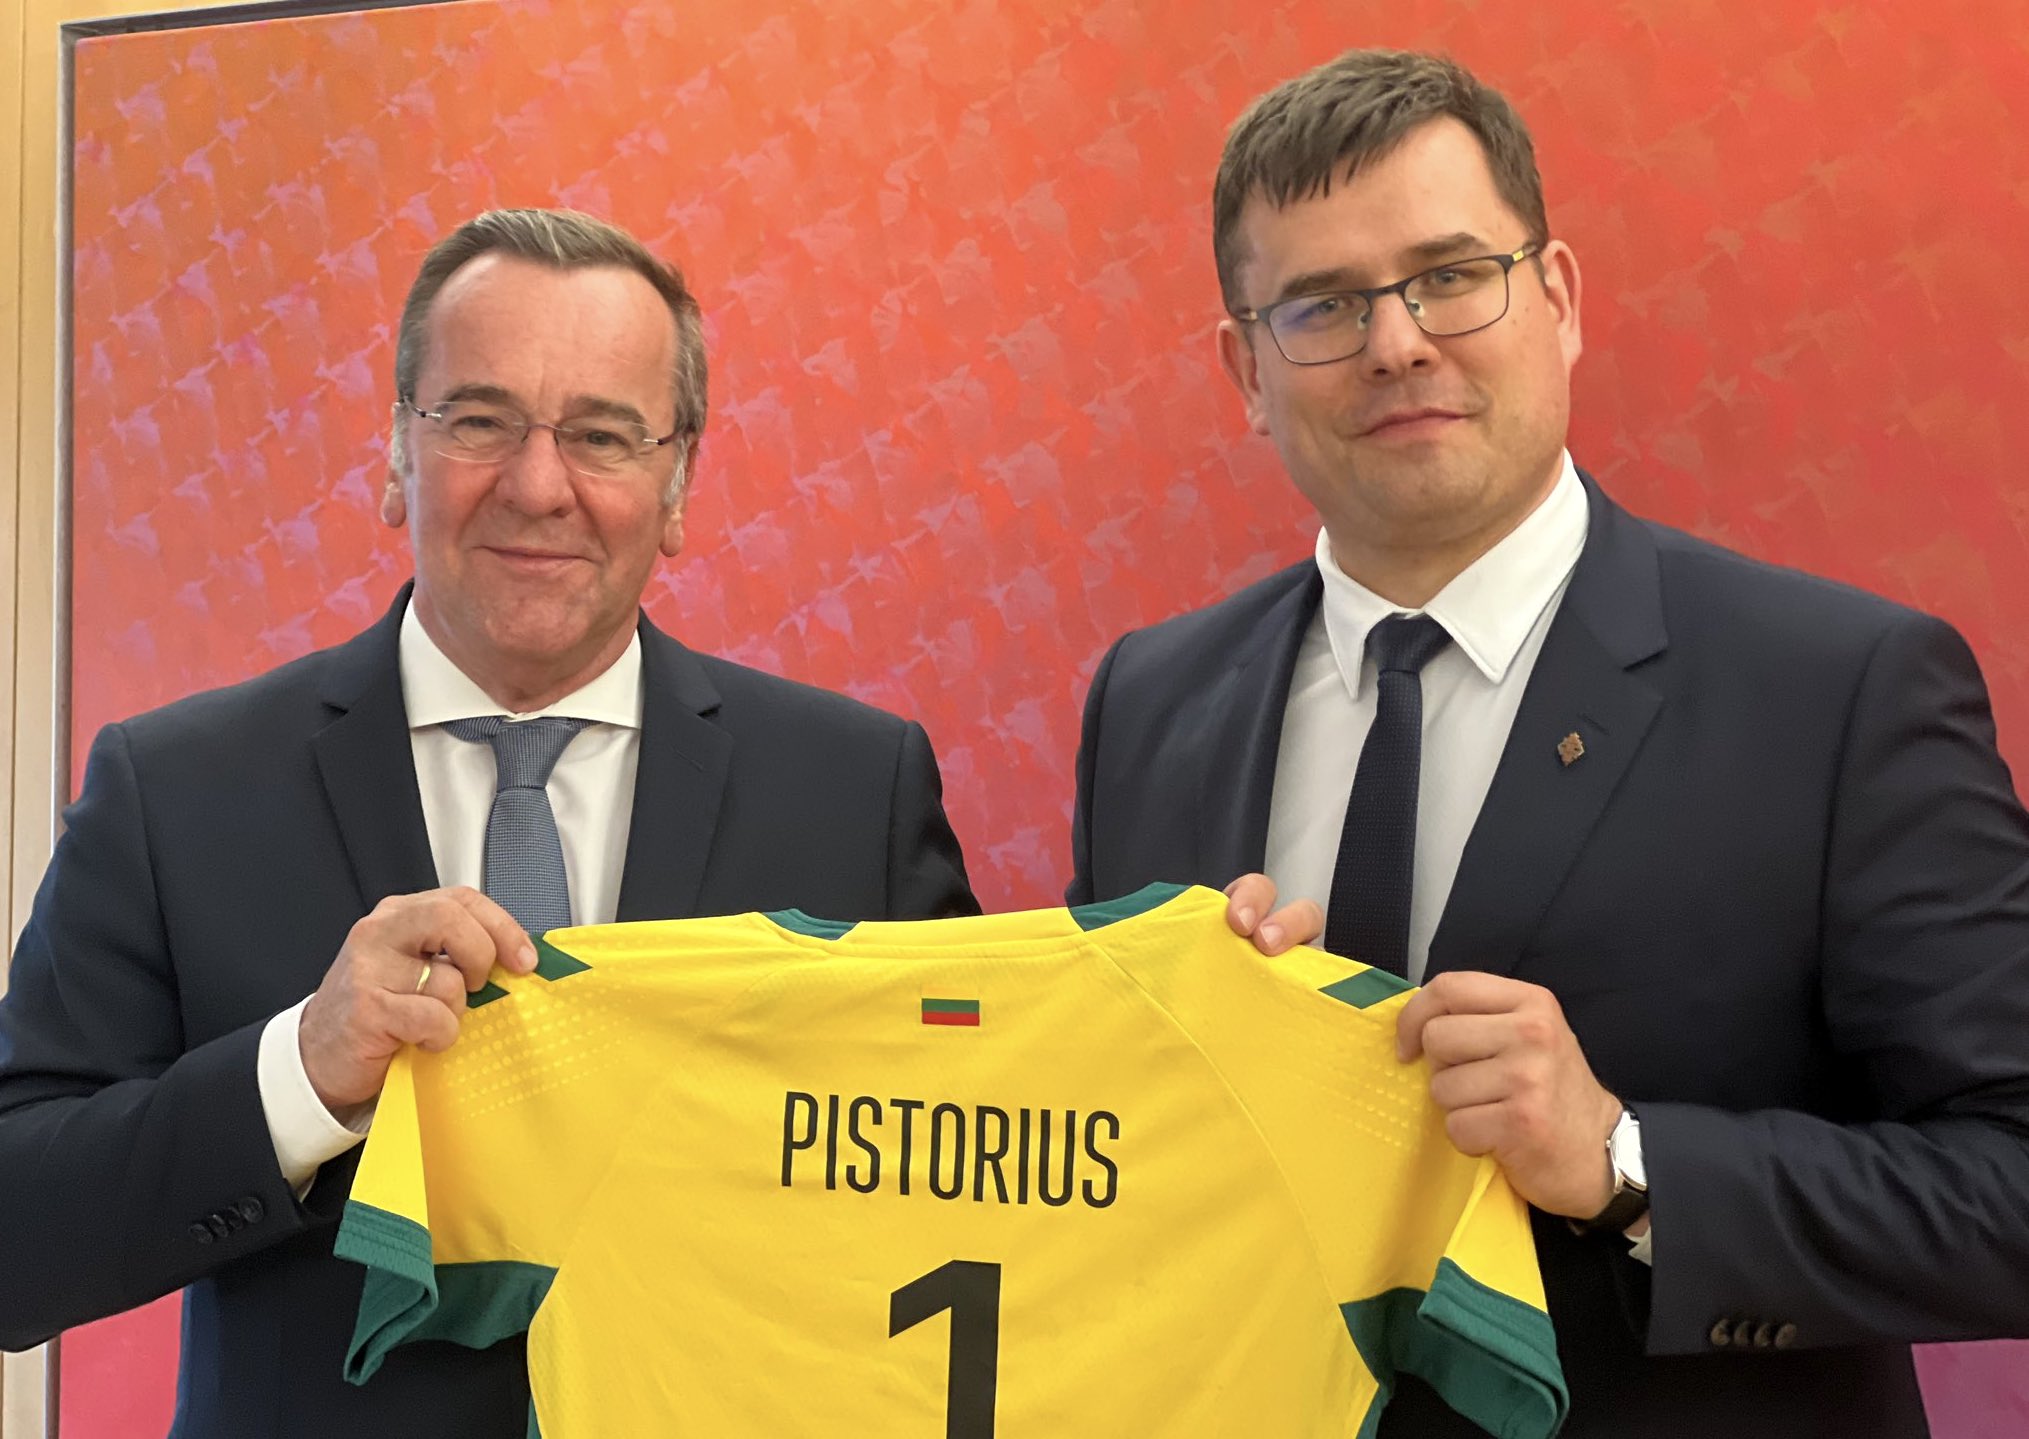 Nummer 1 – Pistorius (l.) erhält ein litauisches Trikot vom Verteidigungsminister aus Litauen, Laurynas Kasčiūnas (r.)